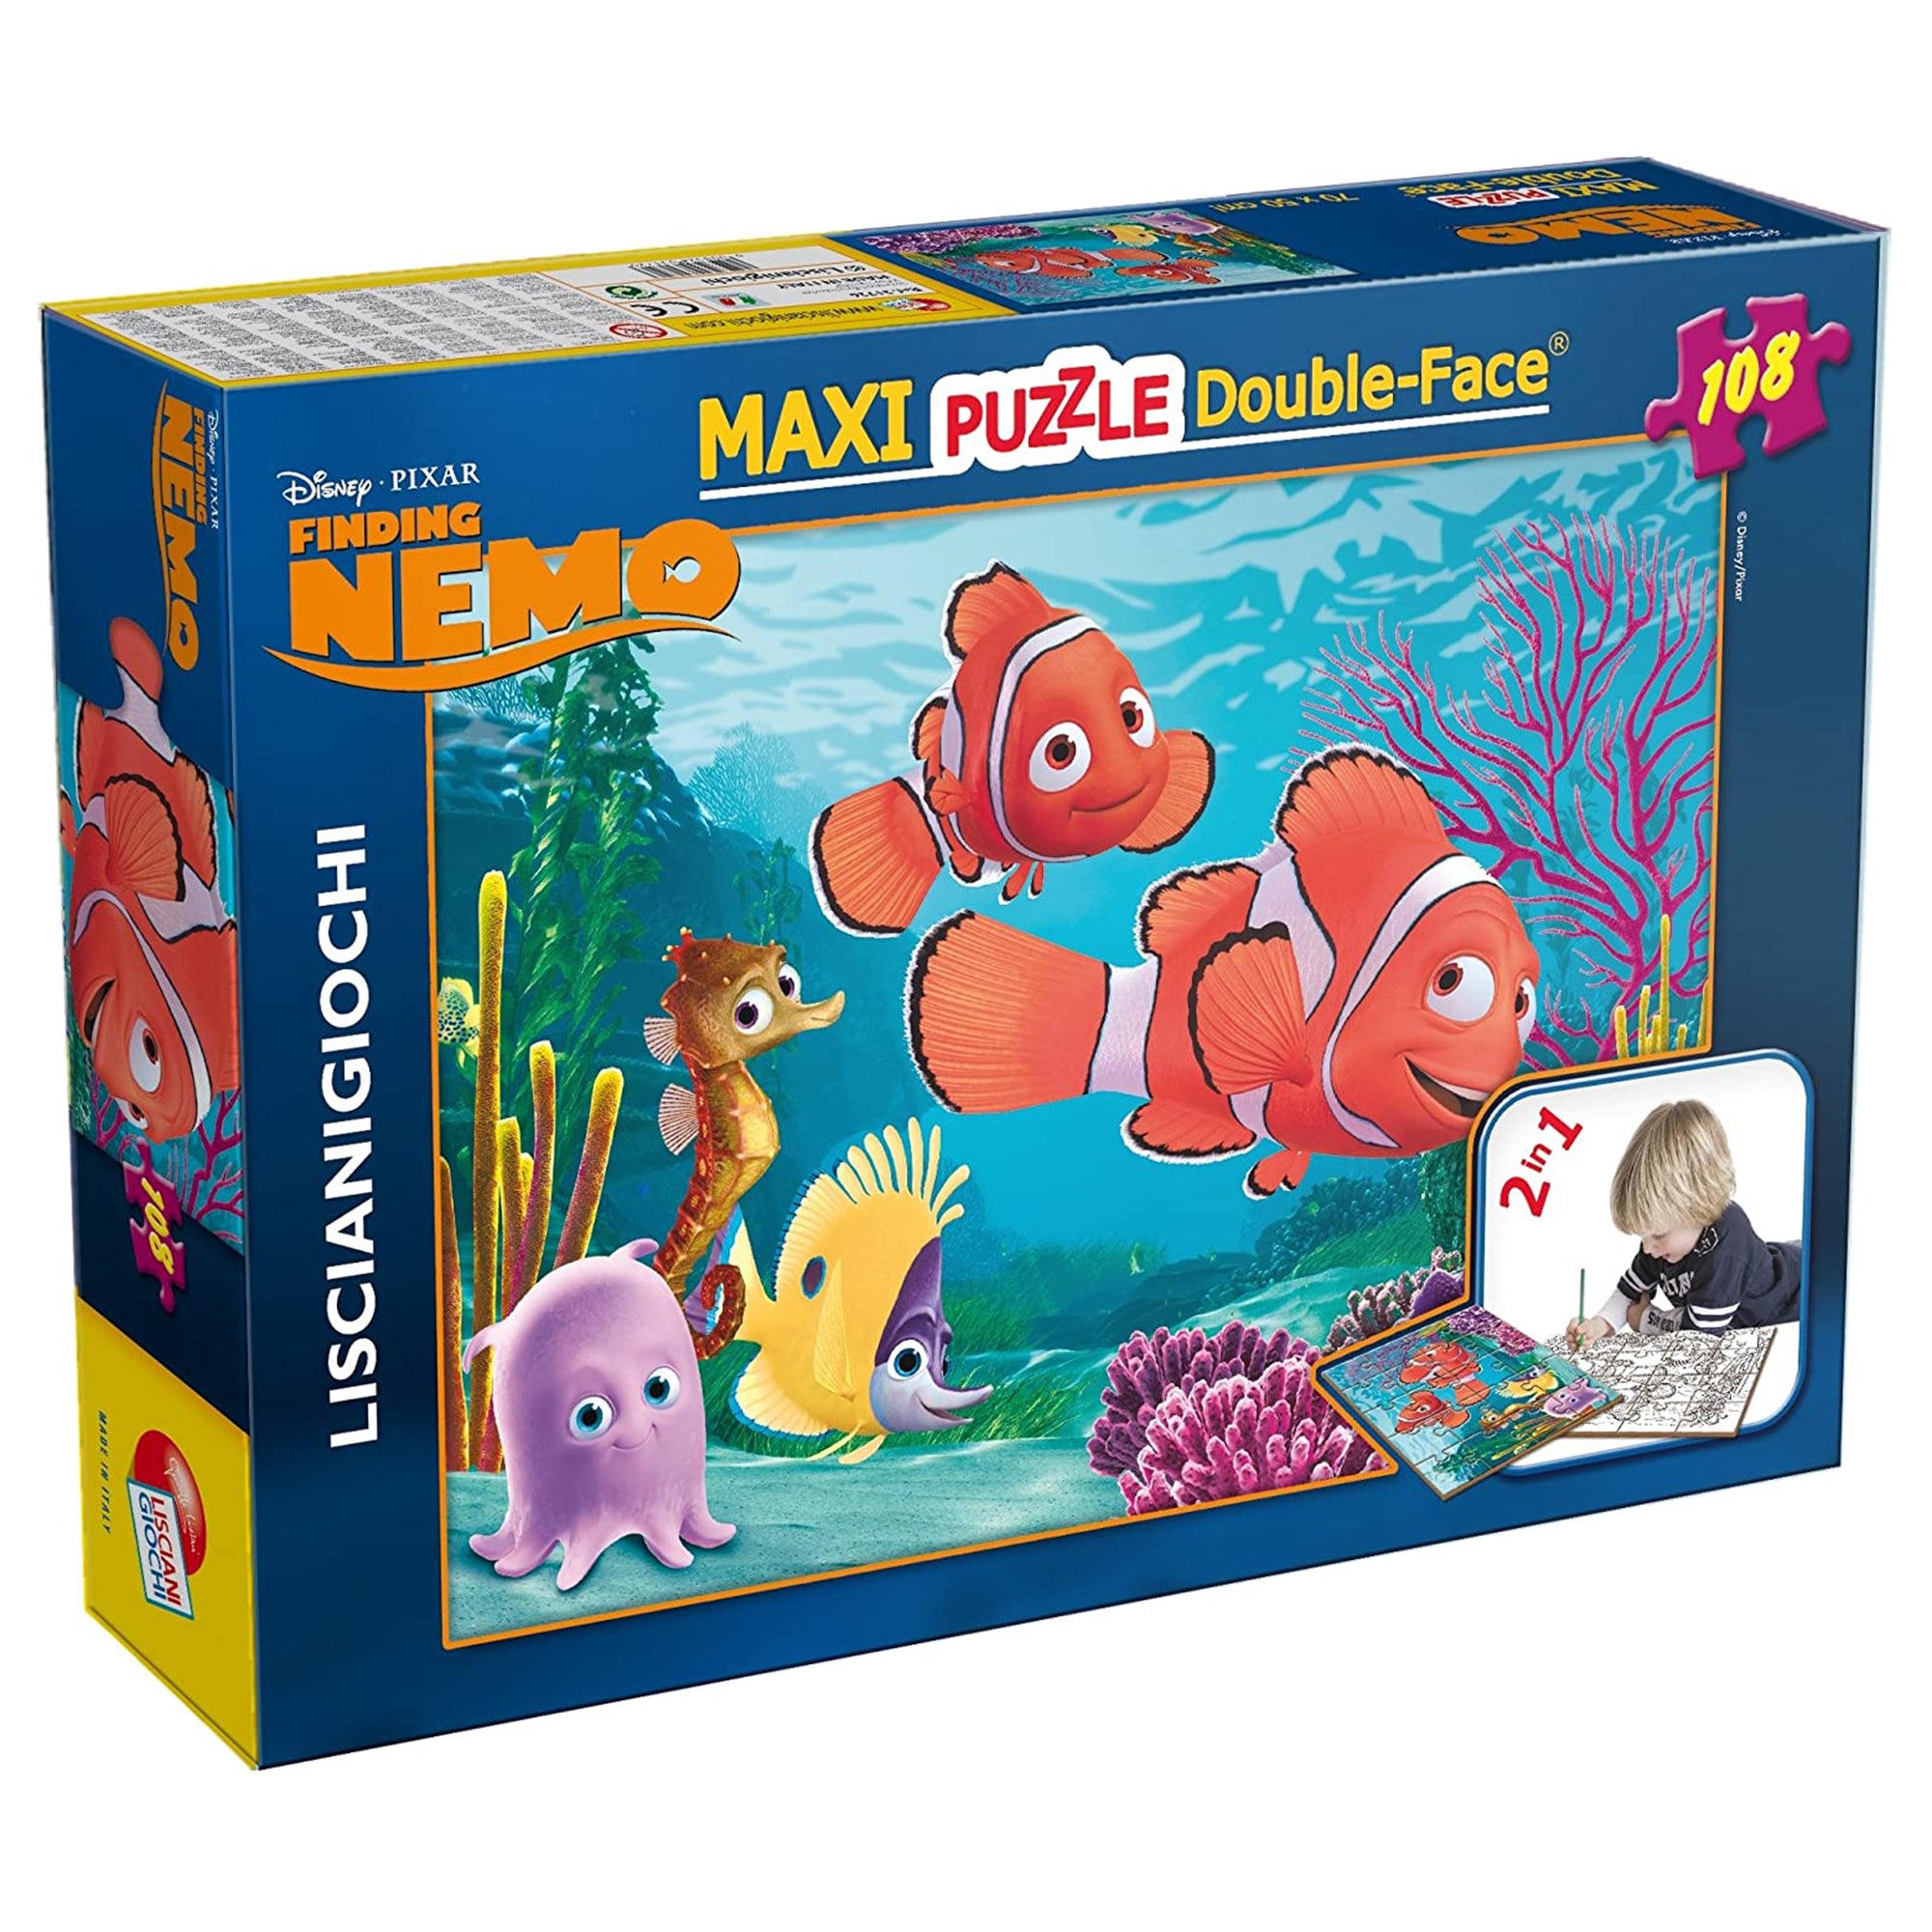 Puzzle maxi double-face Disney Nemo Finding 108 pz retro colorabile 3360